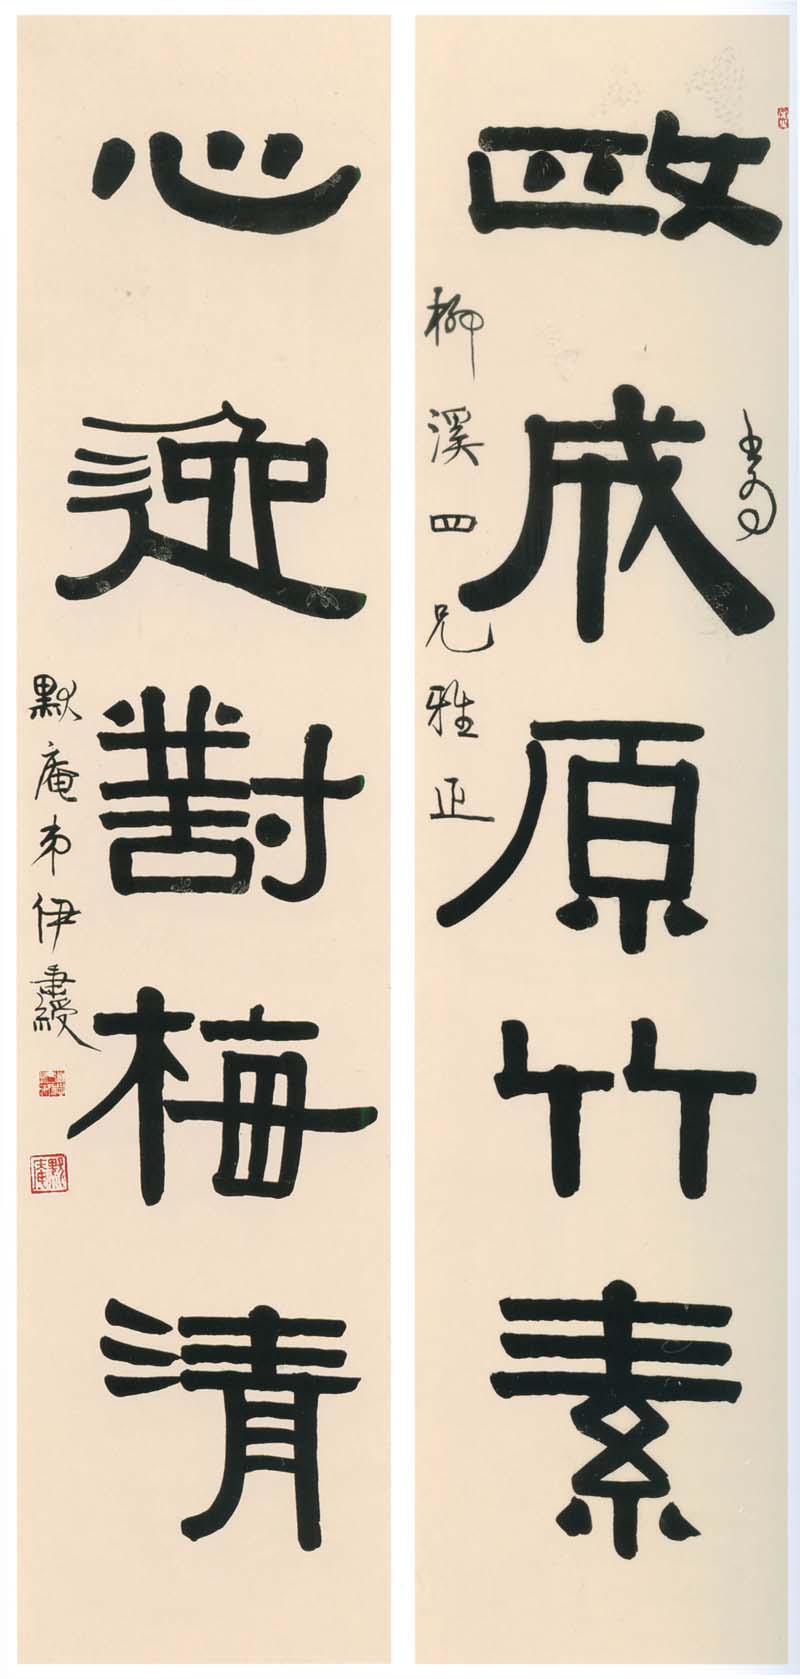 在清朝书法中邓石如的篆书和伊秉绶的隶书真的没有人能比吗